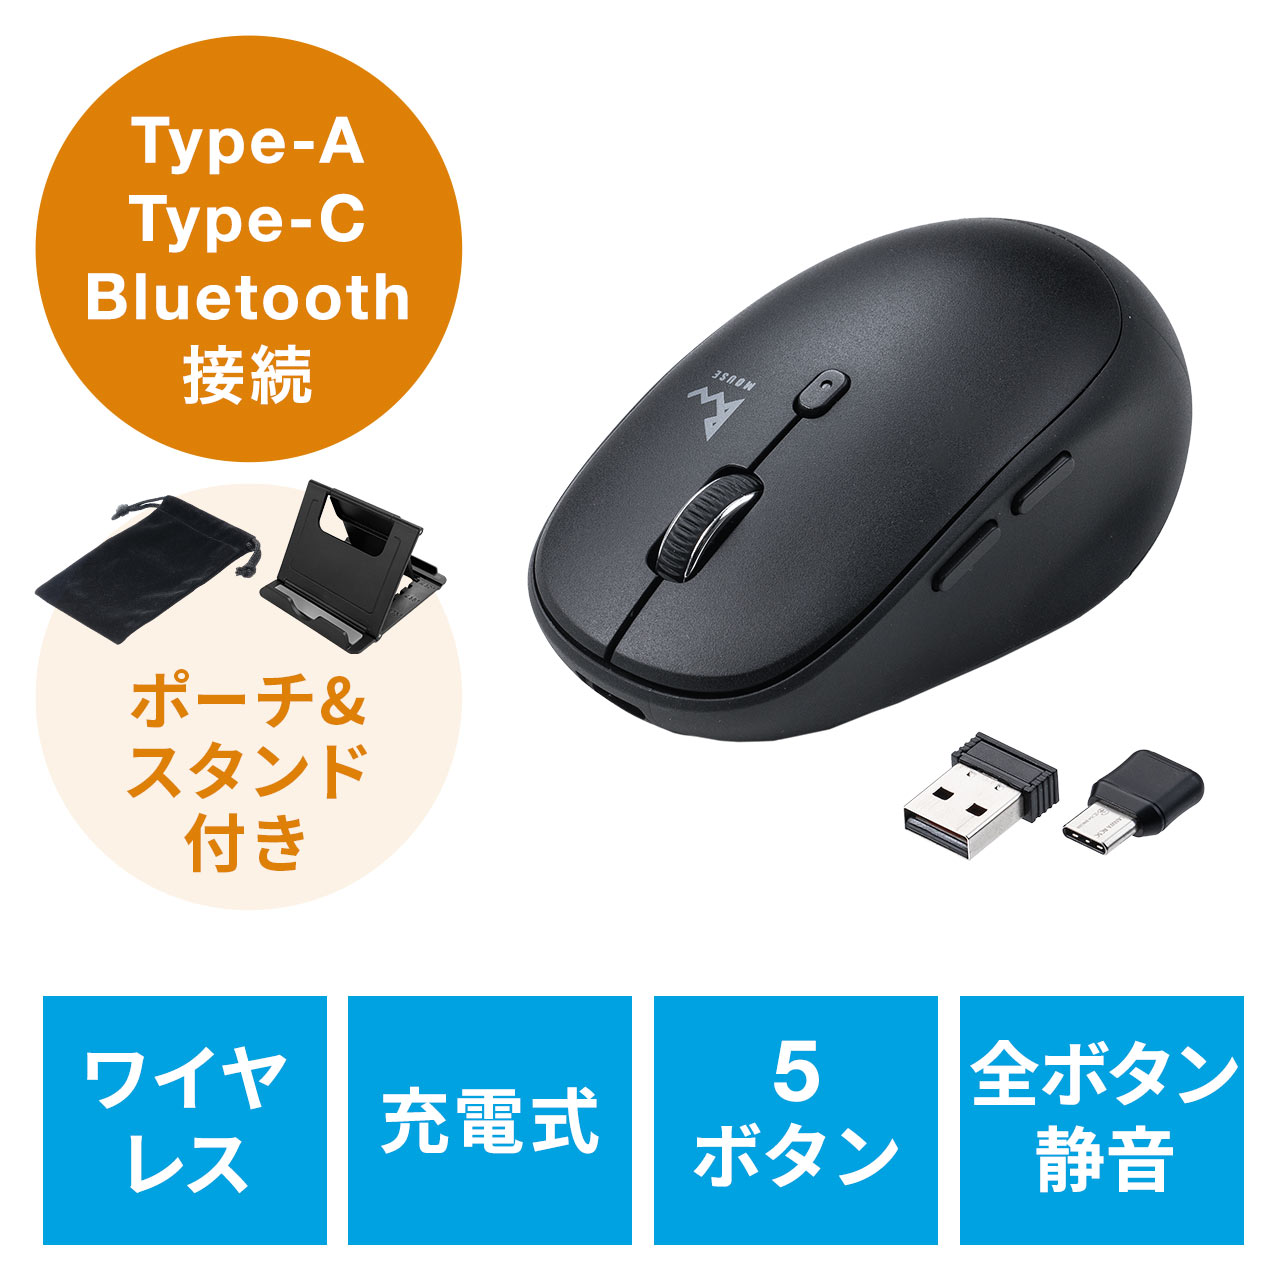 ワイヤレスマウス 静音 マウス USB充電式 ワイヤレス 2.4GHz 省エネルギー 光学式 高精度 軽量 持ち運び便利 有線マウス 無線マウス 有線 無線両対応